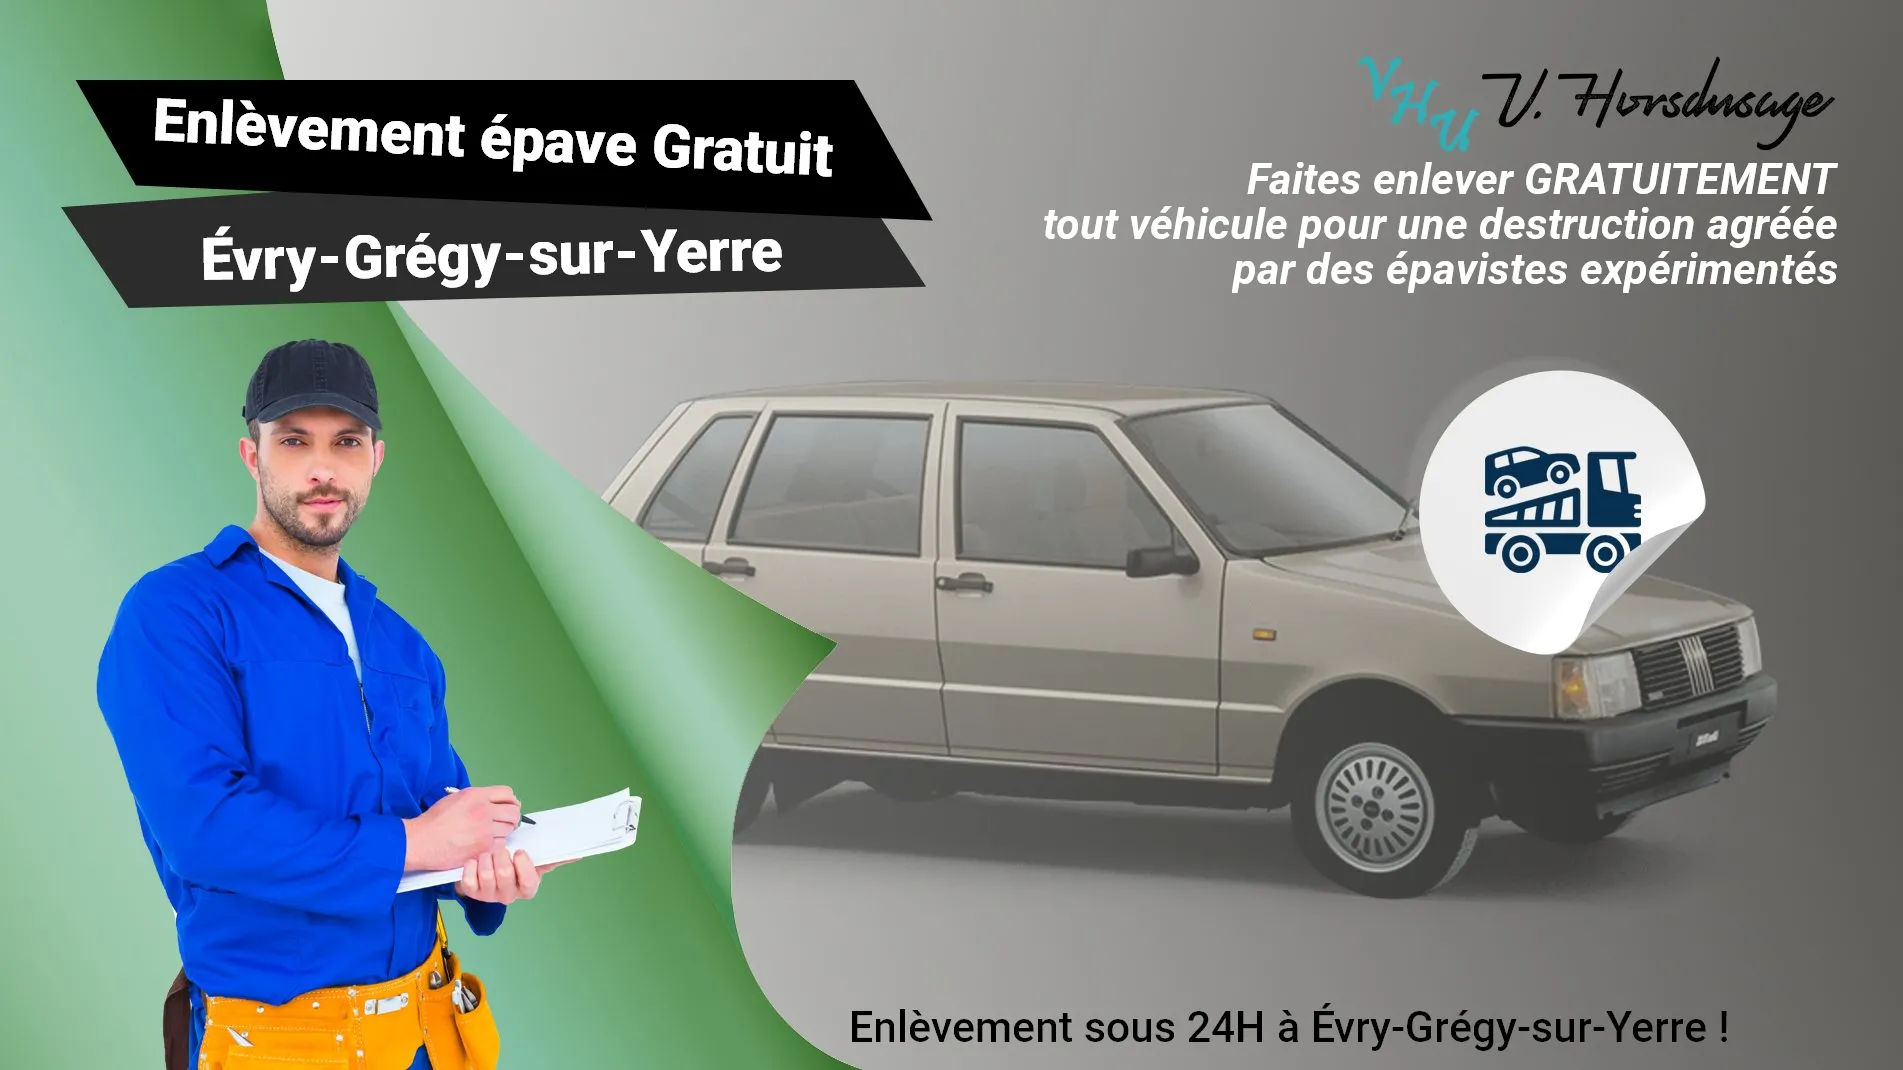 Pour un enlèvement gratuit à Évry-Grégy-sur-Yerre, contactez nos épavistes agréé VHU